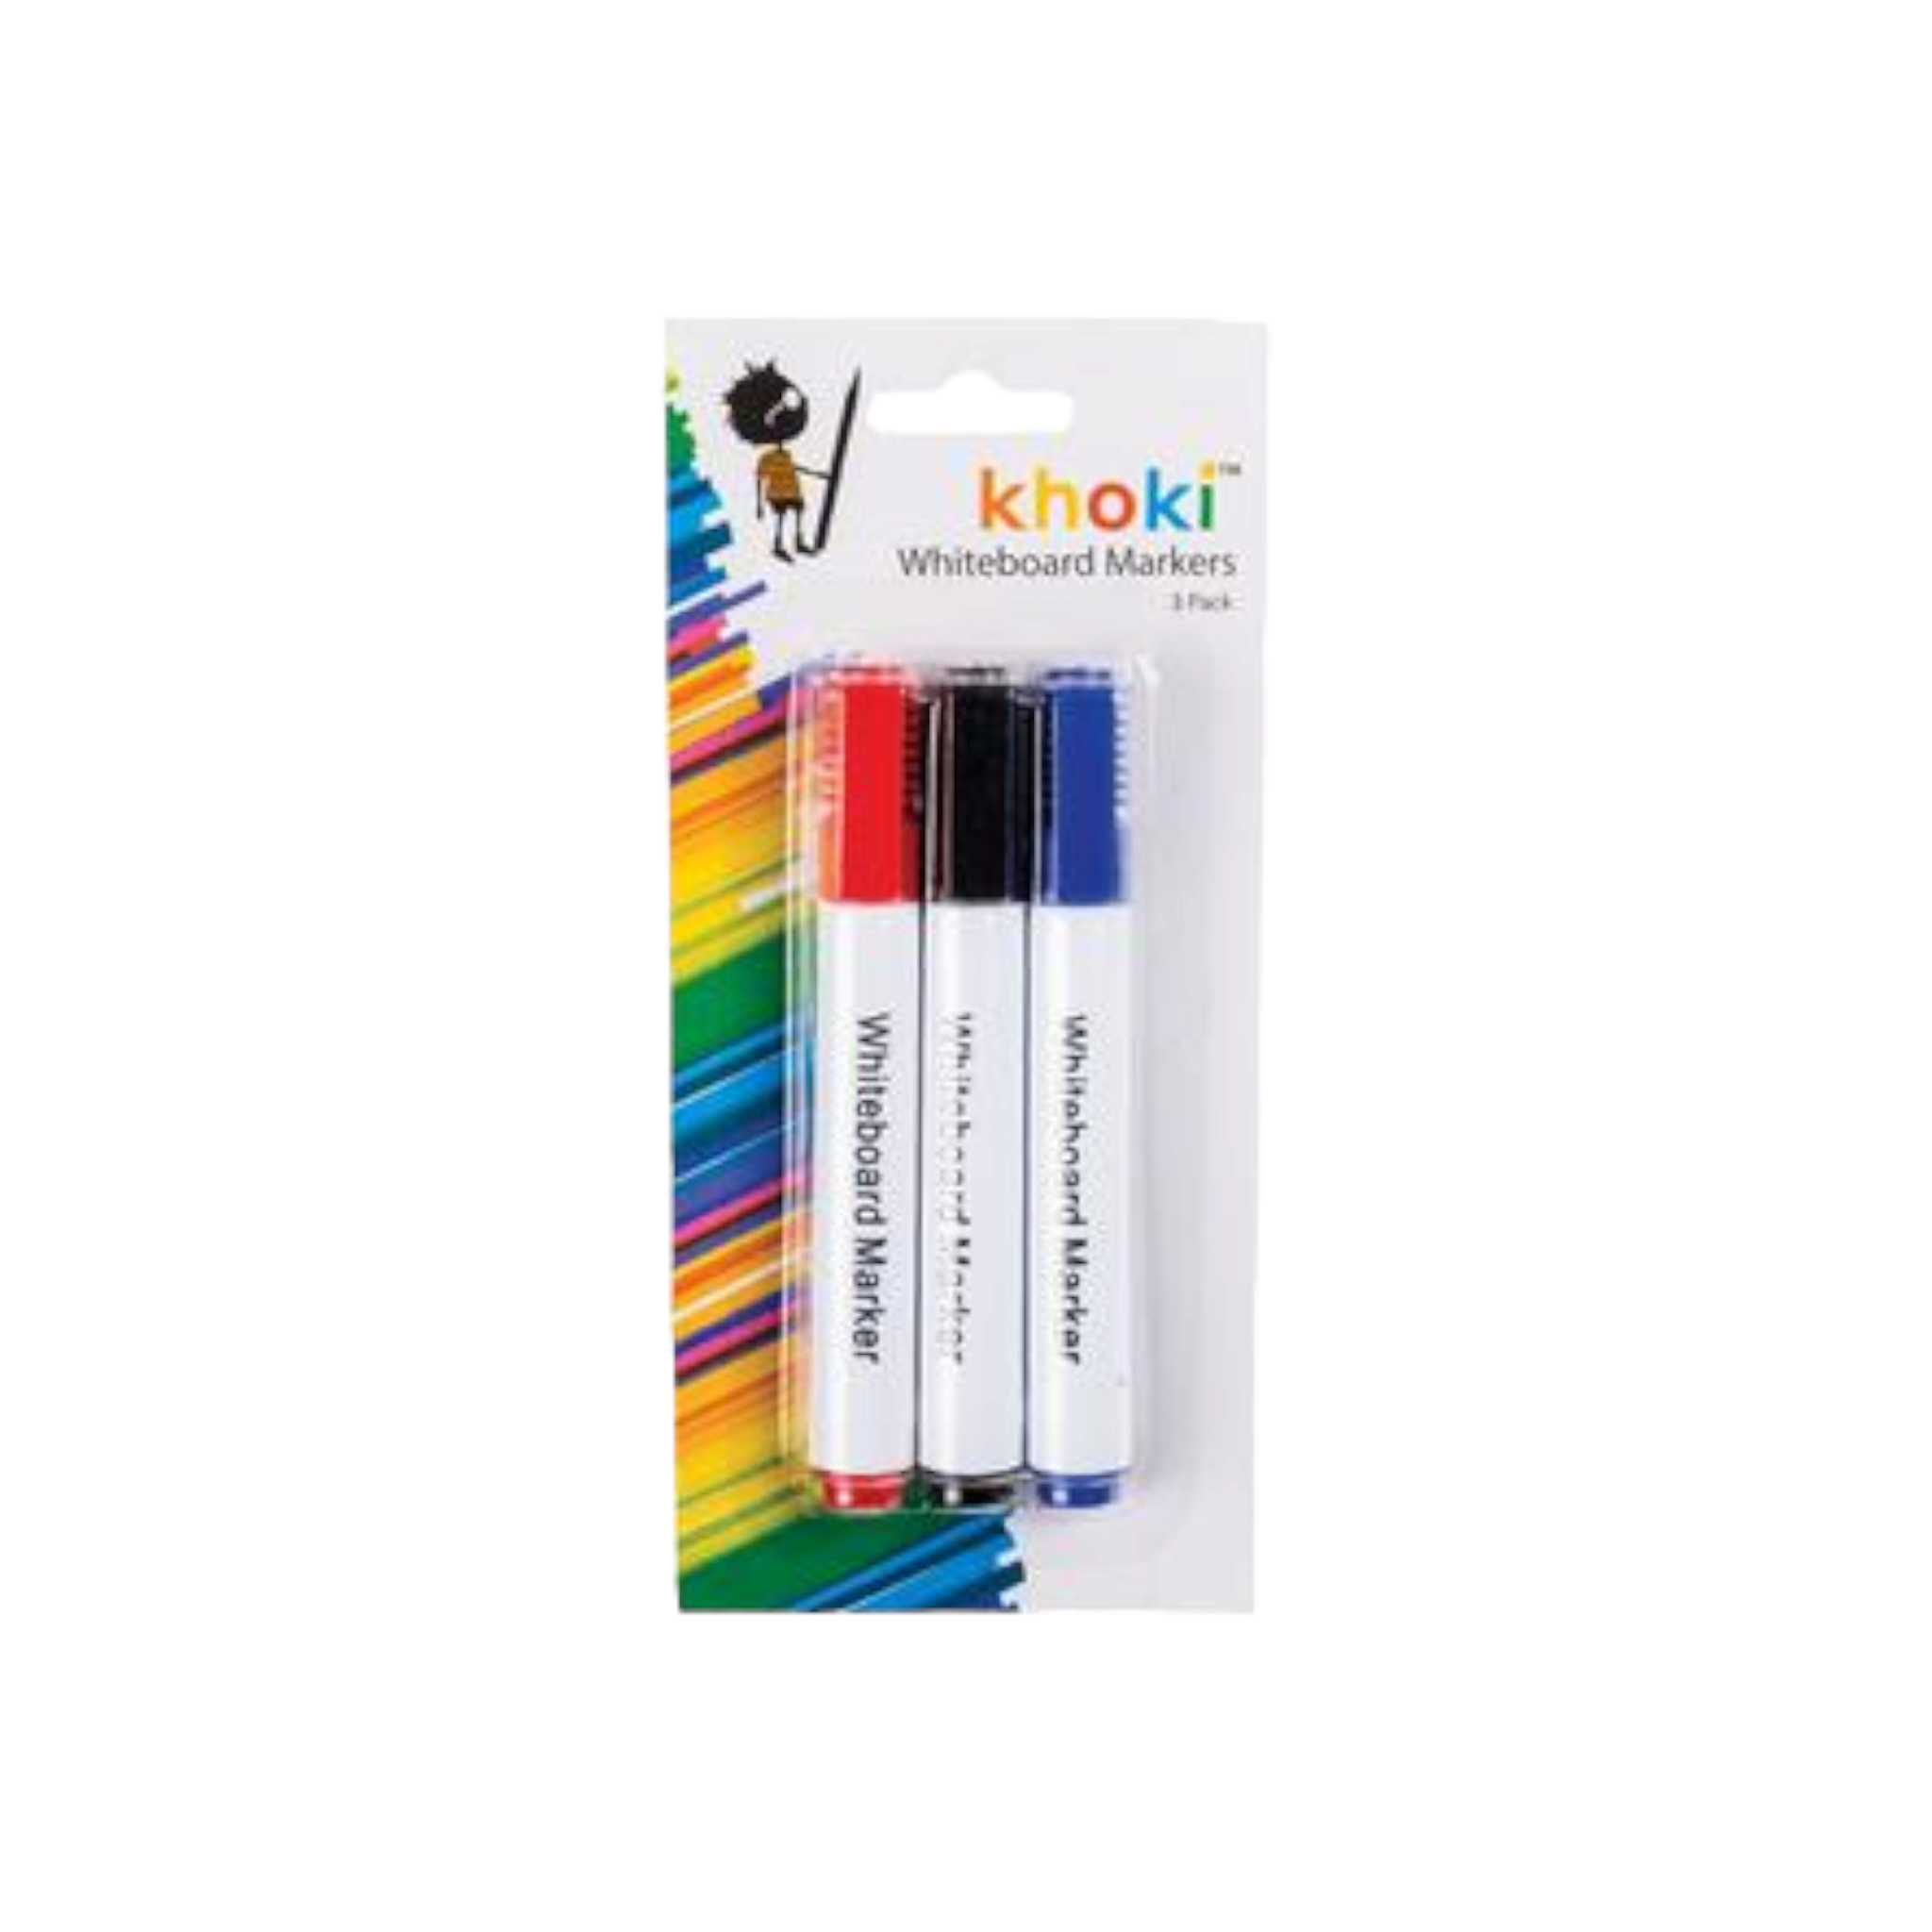 Khoki Whiteboard Marker 3pc